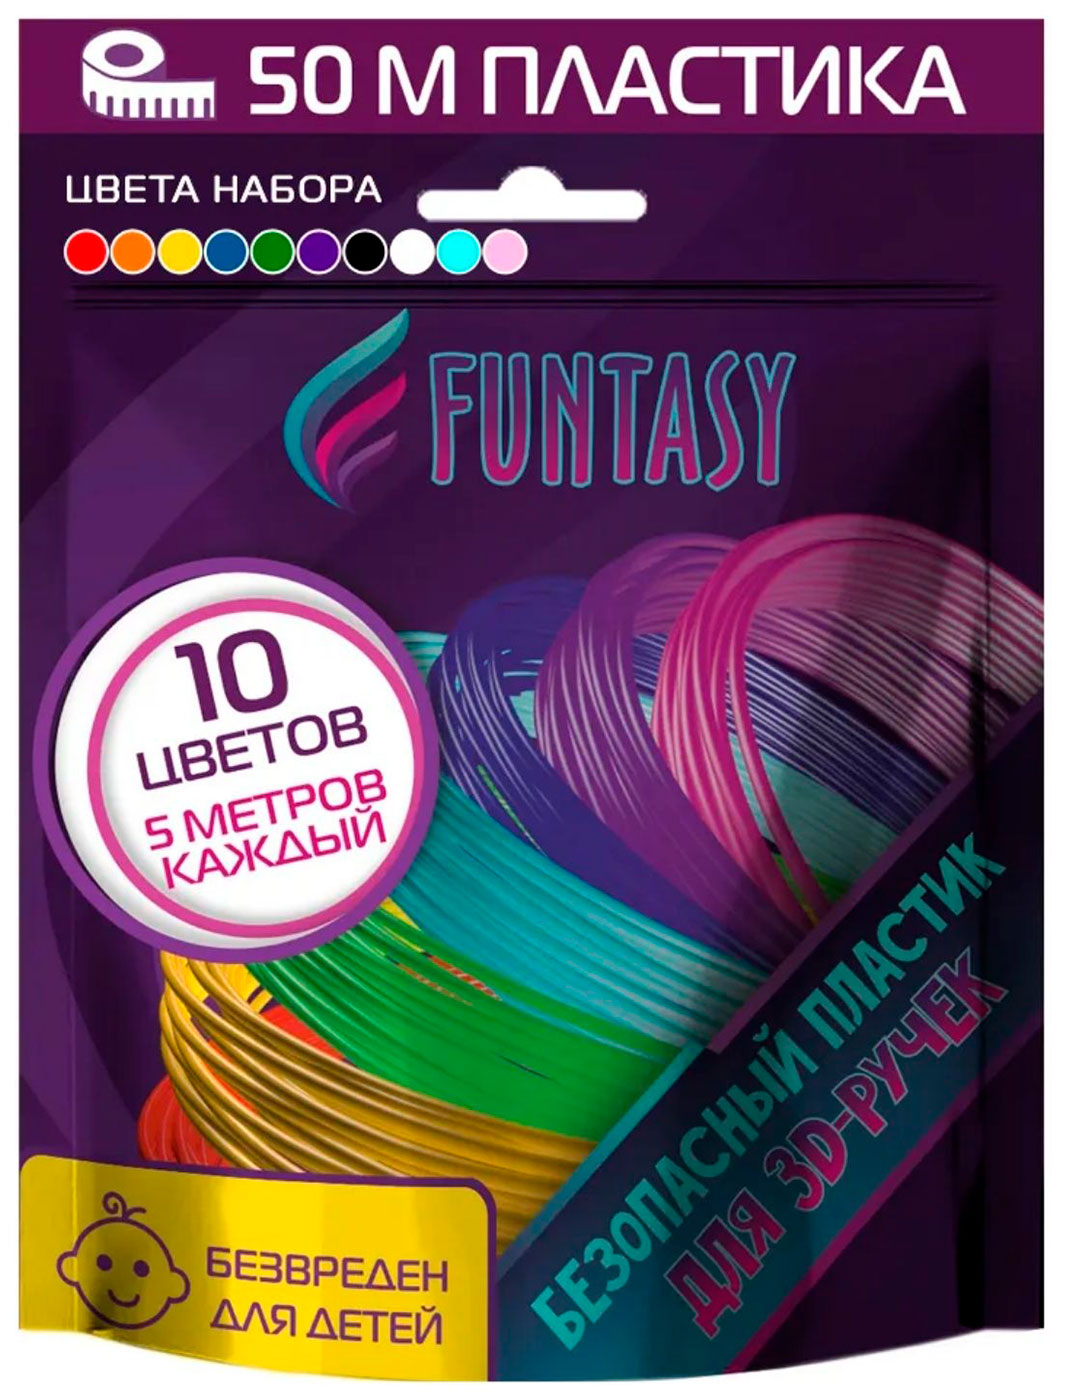 Набор PLA-пластика для 3д ручек Funtasy 10 цветов по 5 метров наборы для творчества funtasy набор pla пластика для 3d ручек 12 цветов по 10 м